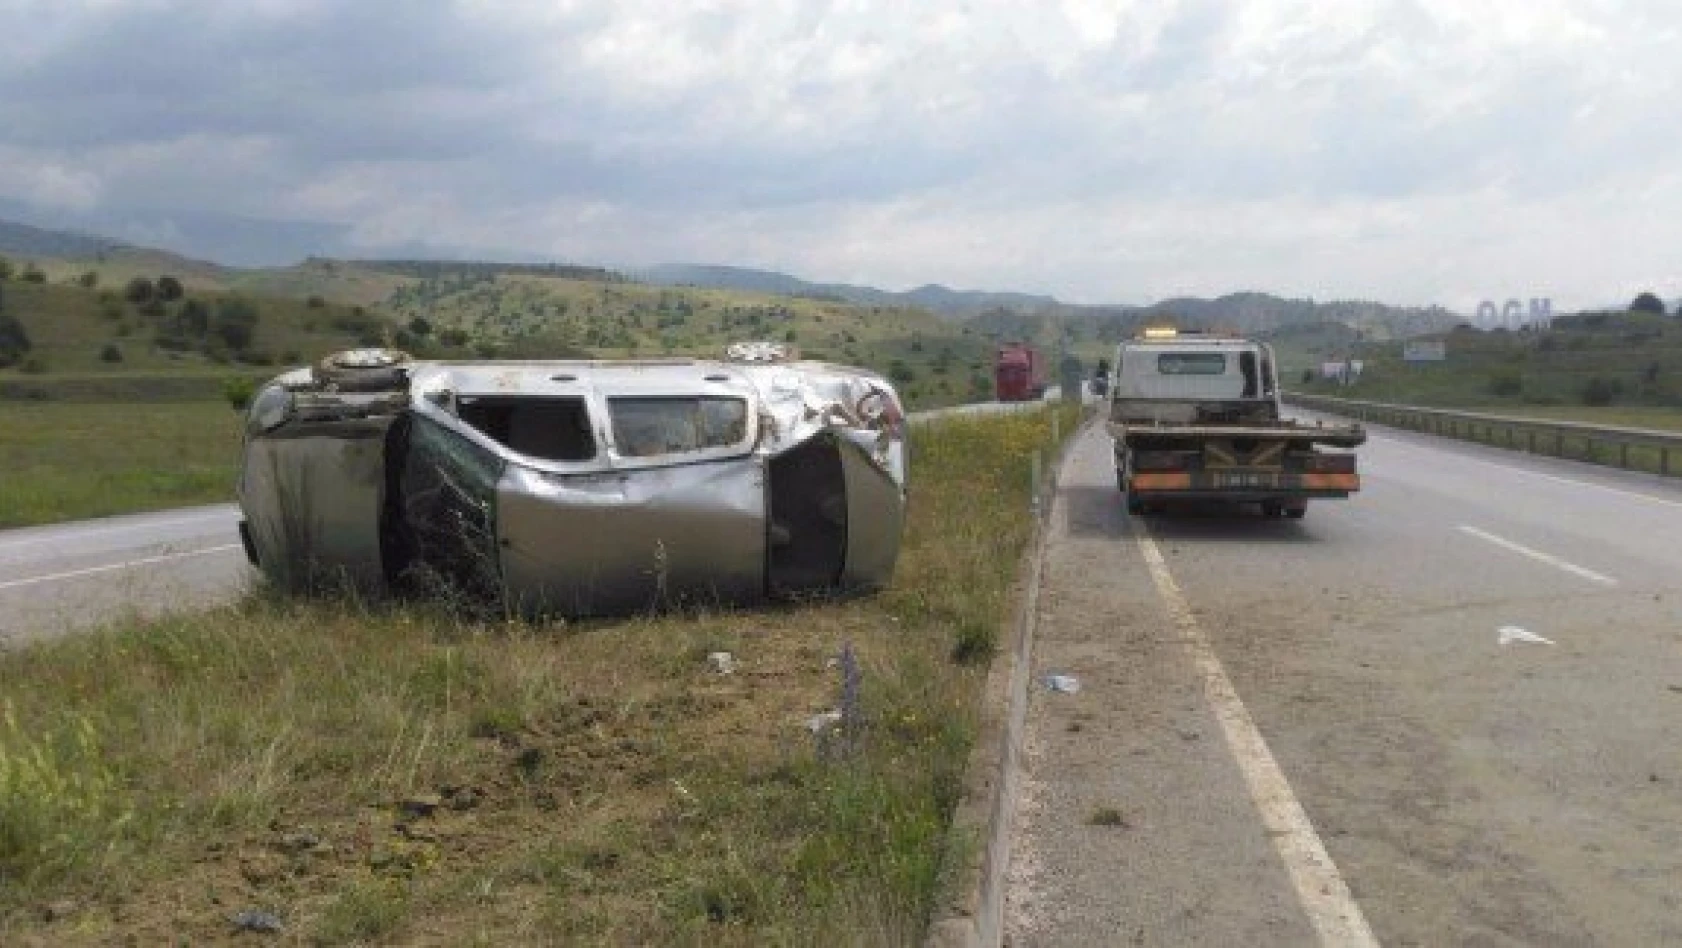 Kastamonu'da otomobil takla attı: 4 yaralı